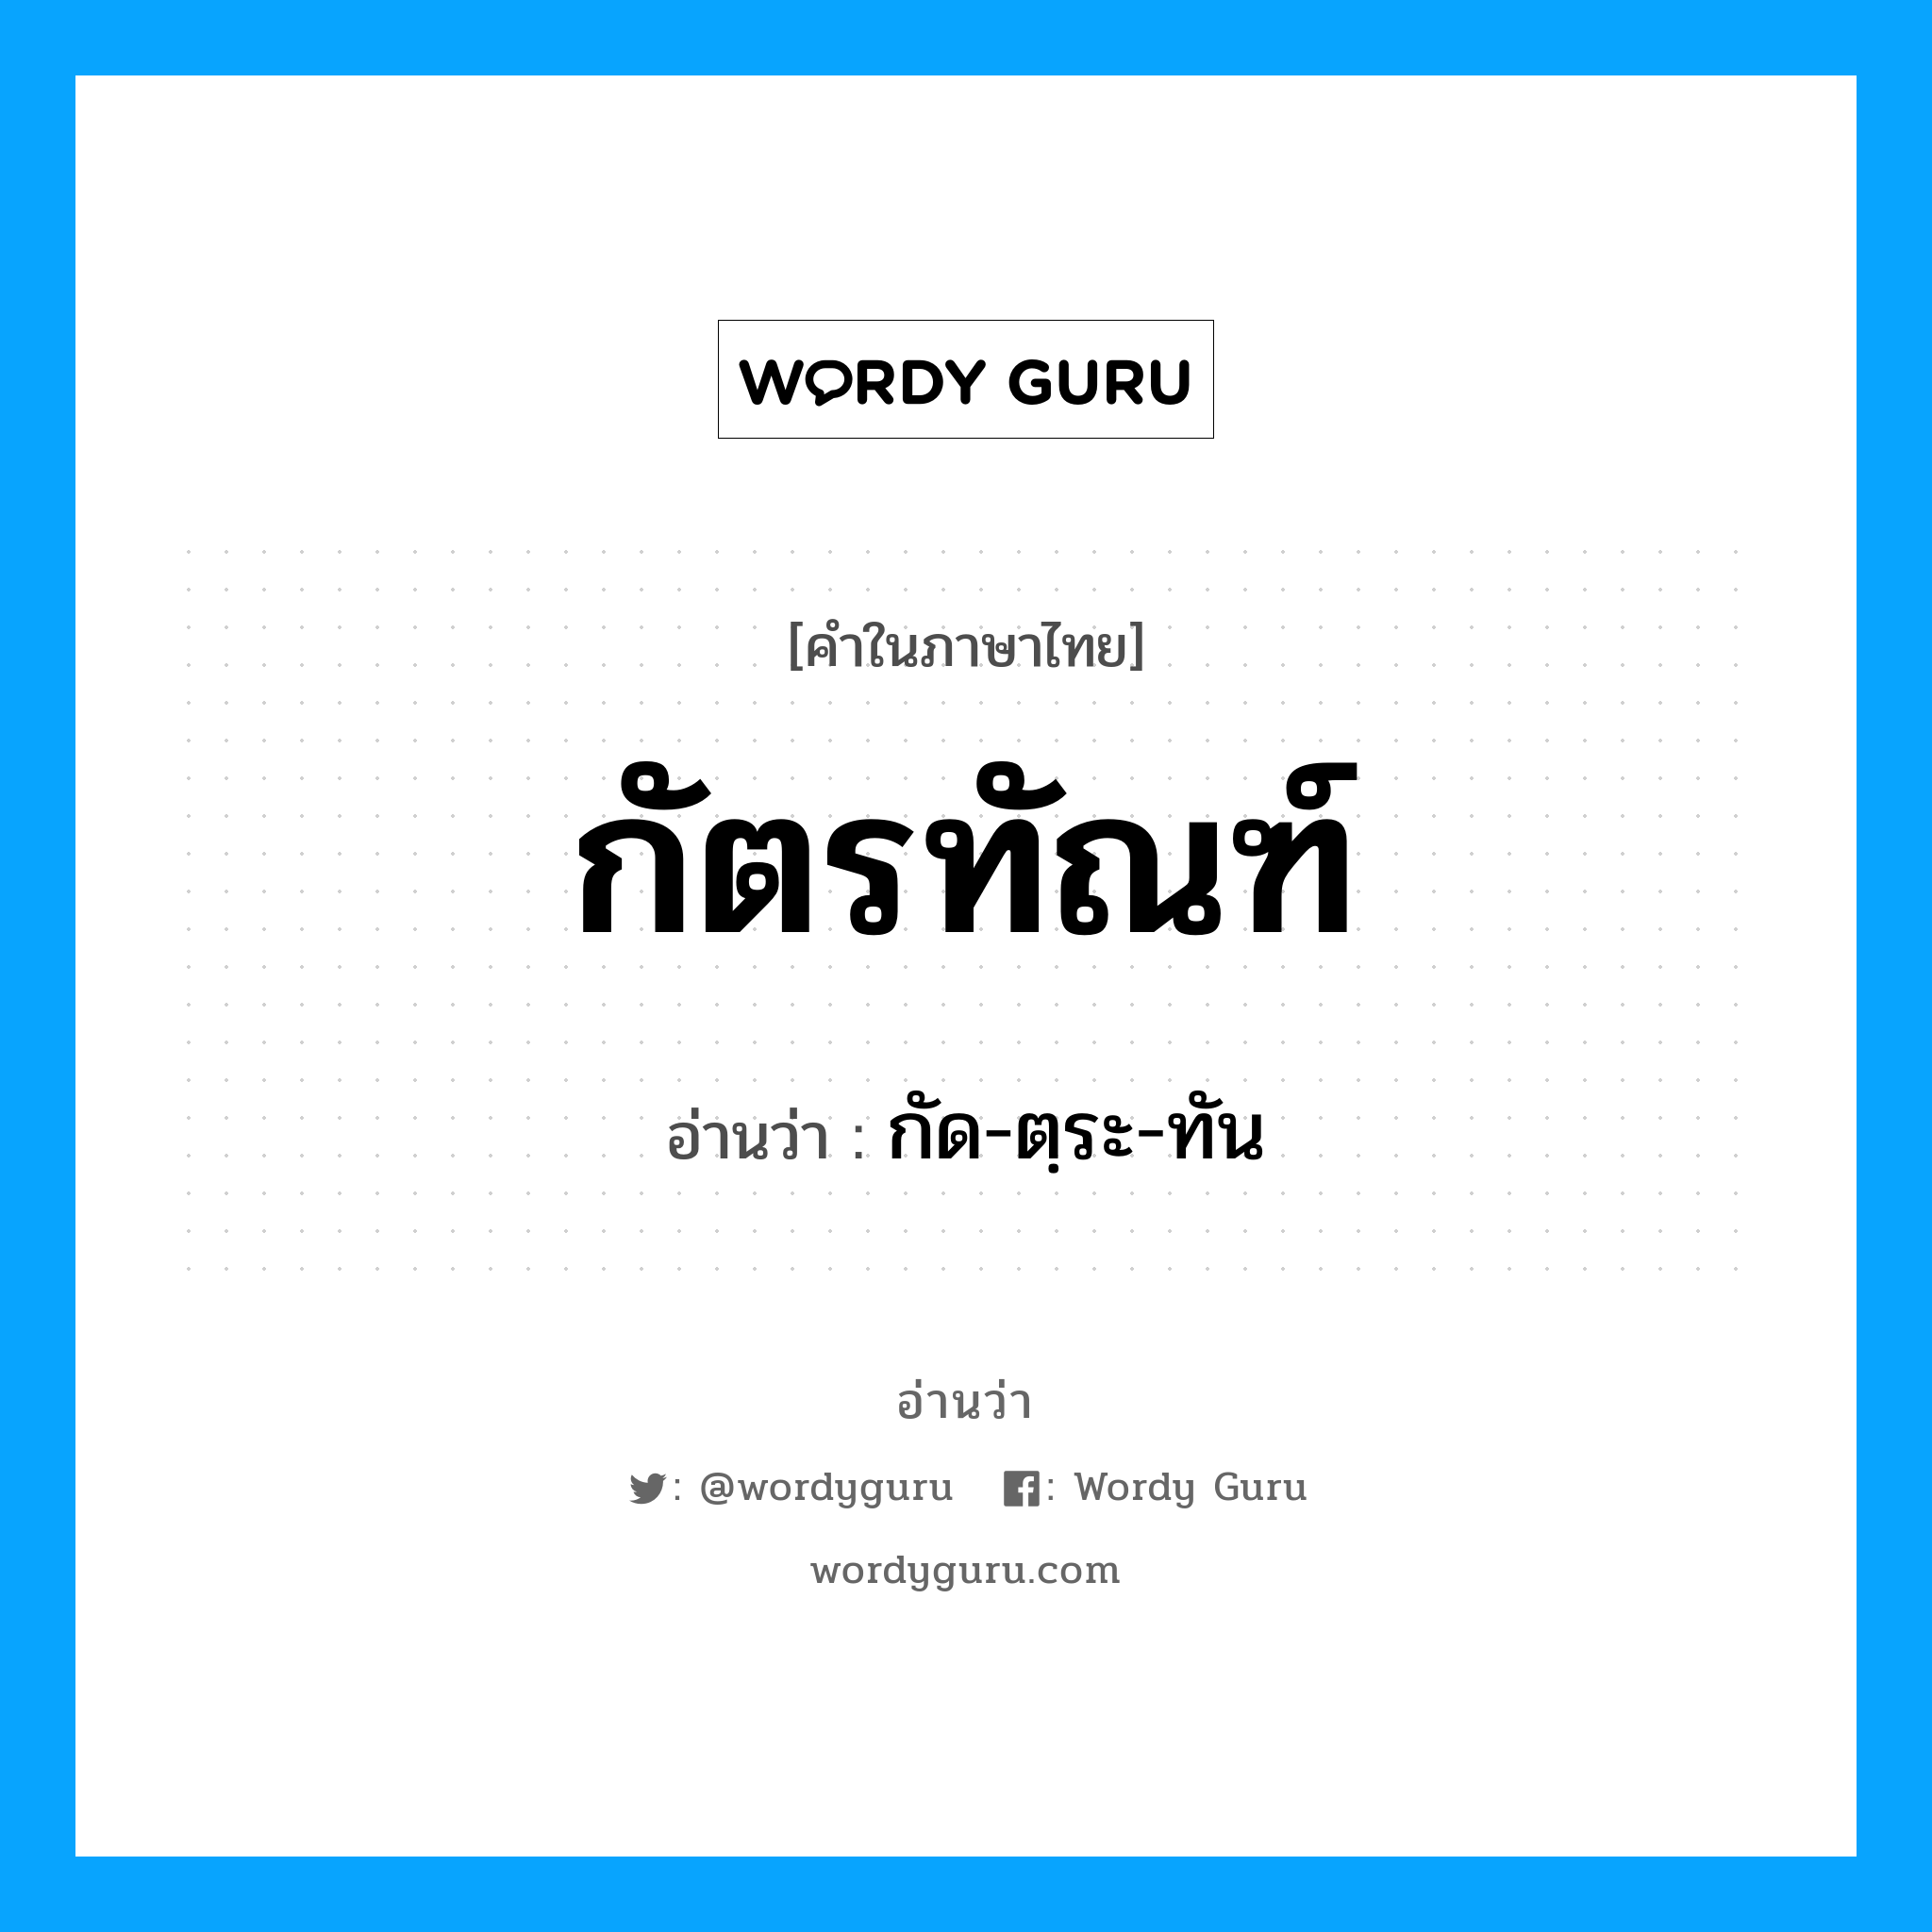 กัด-ตฺระ-ทัน เป็นคำอ่านของคำไหน?, คำในภาษาไทย กัด-ตฺระ-ทัน อ่านว่า กัตรทัณฑ์